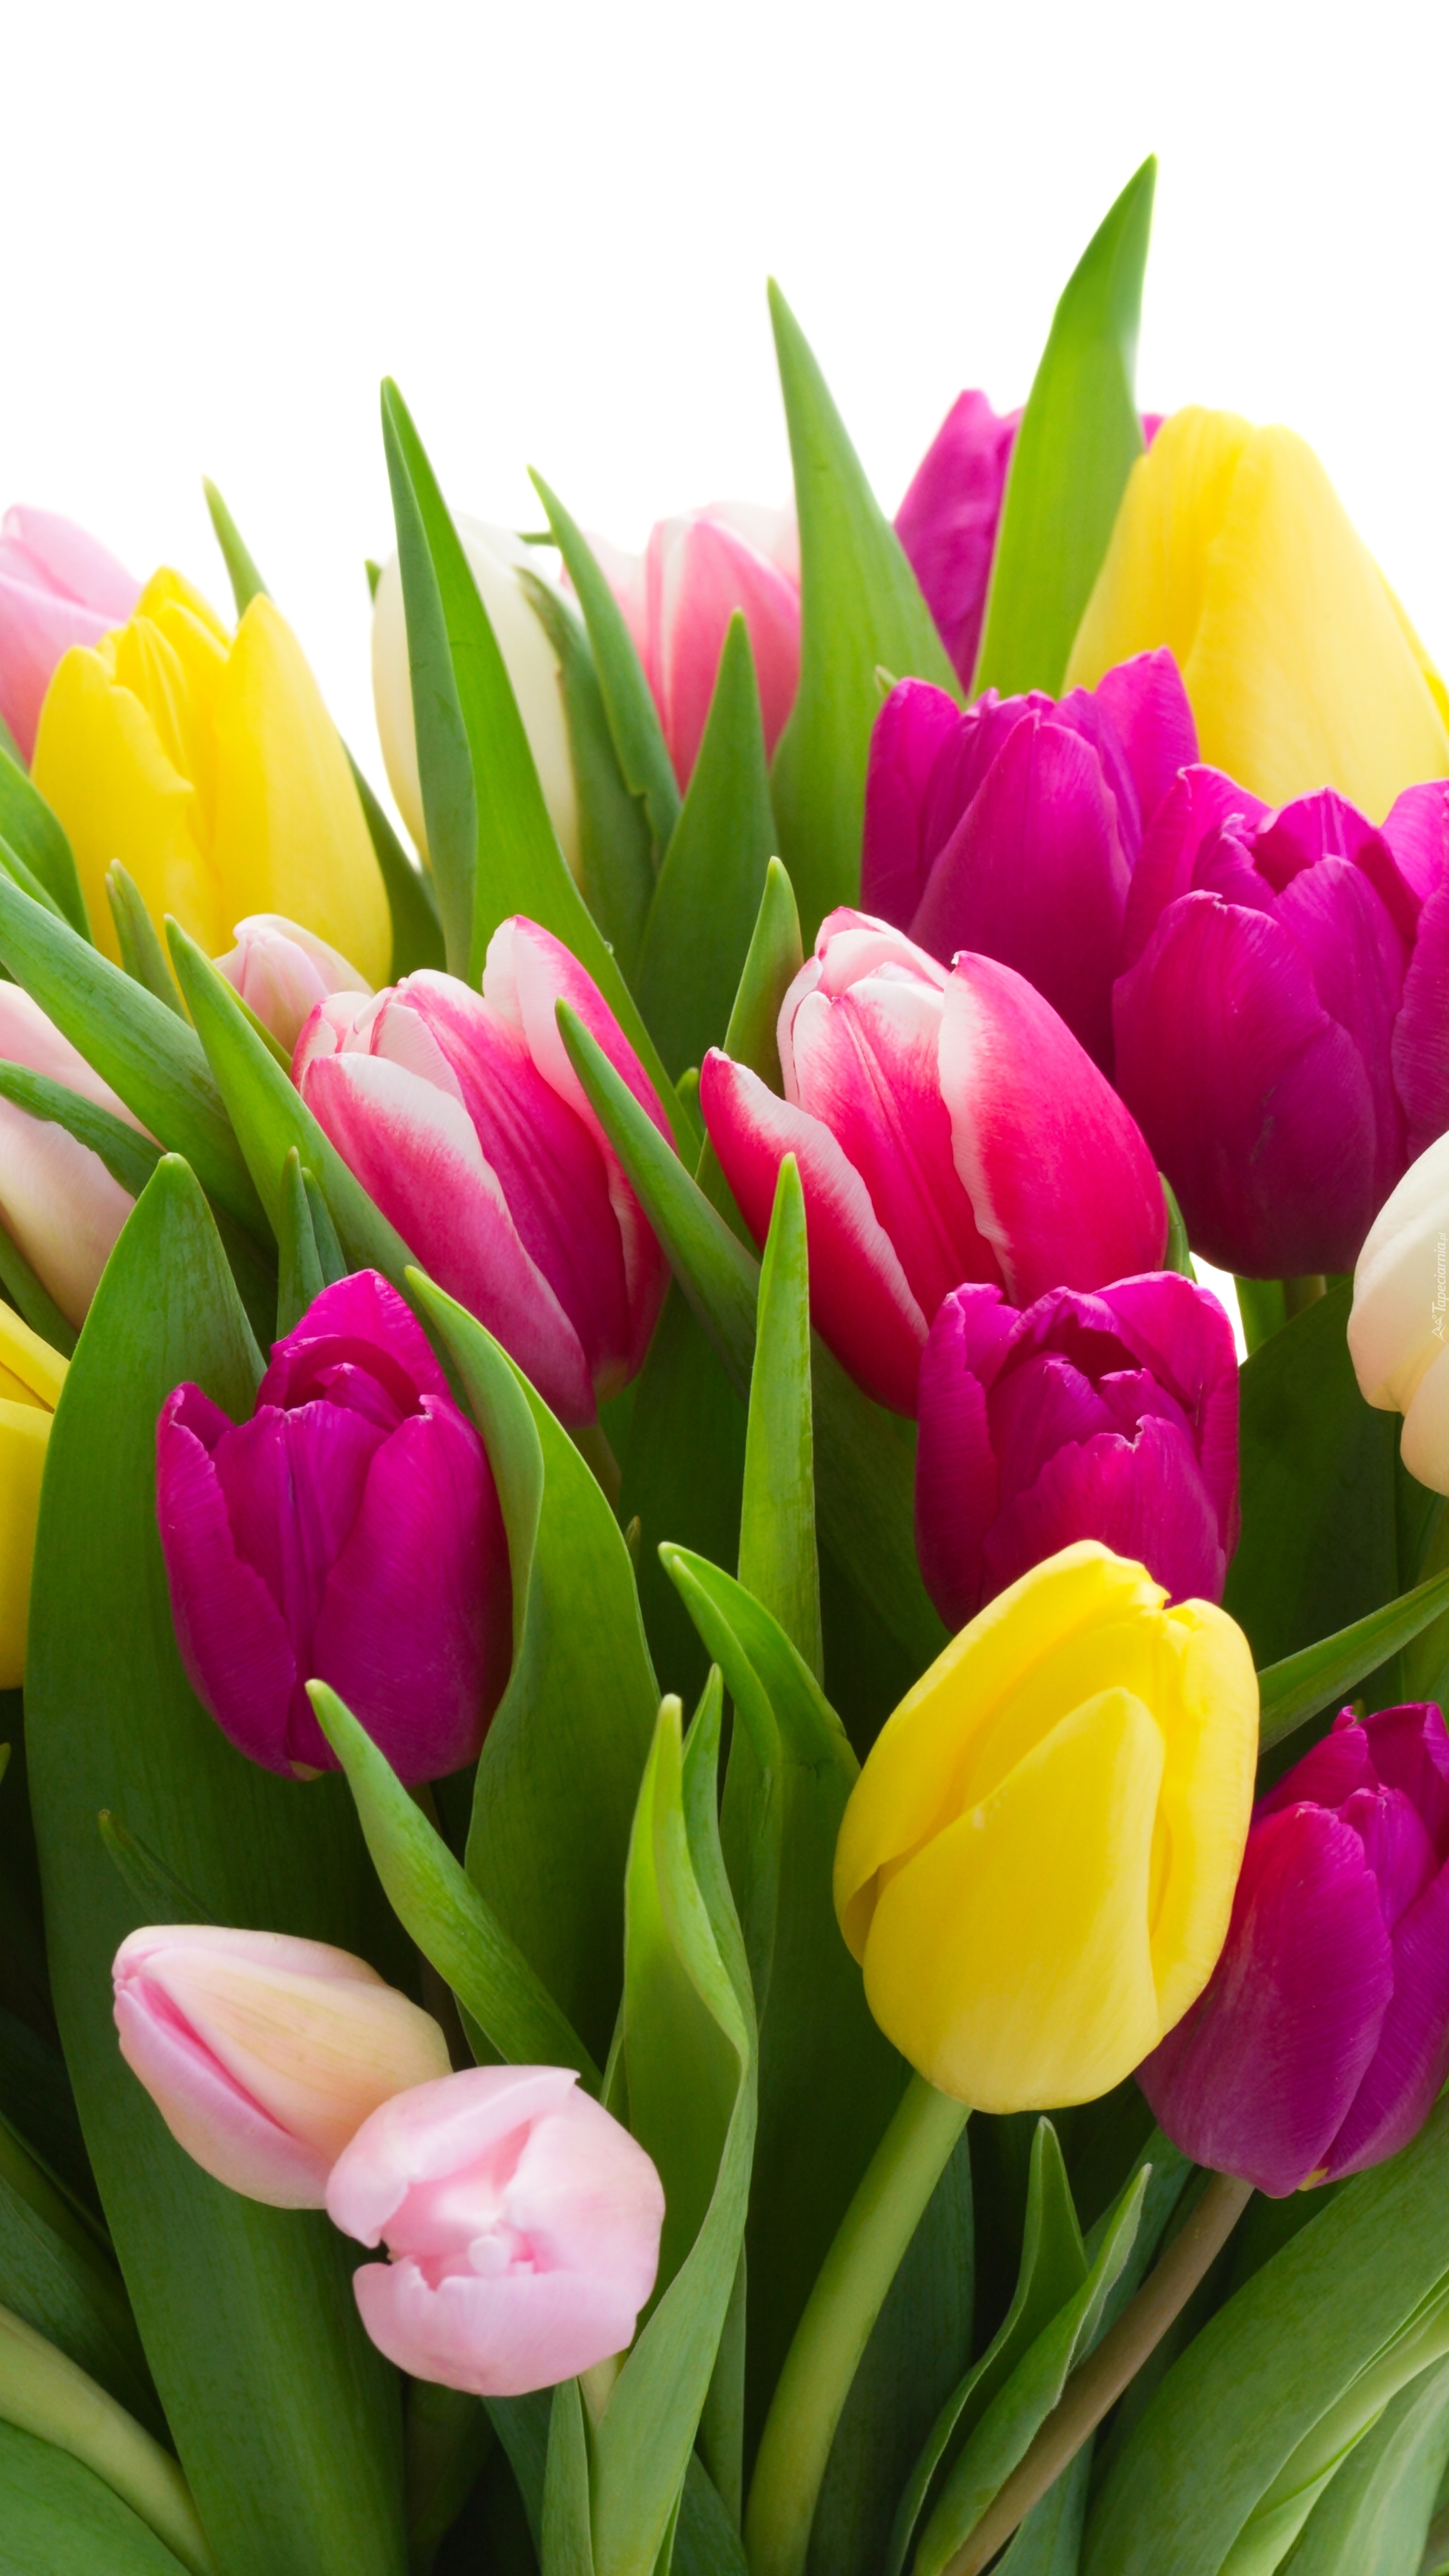 Bukiet wiosny w tulipanach